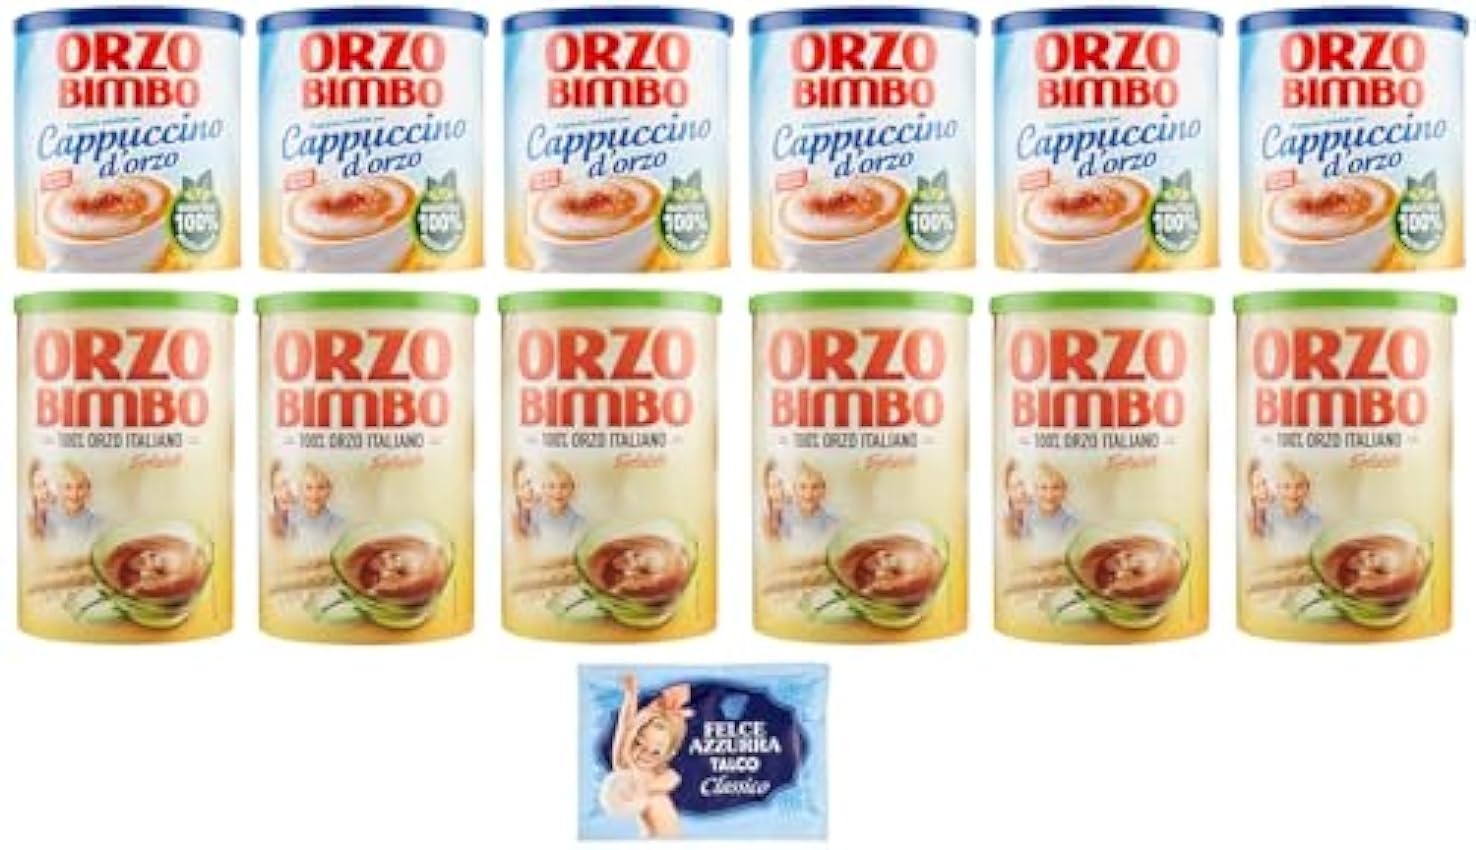 Orzo Bimbo Lot de 12 paquets de test solubles pour cappuccino d´orge 150 g + Orzo Bimbo Orzo Bimbo 200 g, une alternative sans caféine + 1 sachet de talc Felce Azzurra gratuit 100 g n22dUM2Q